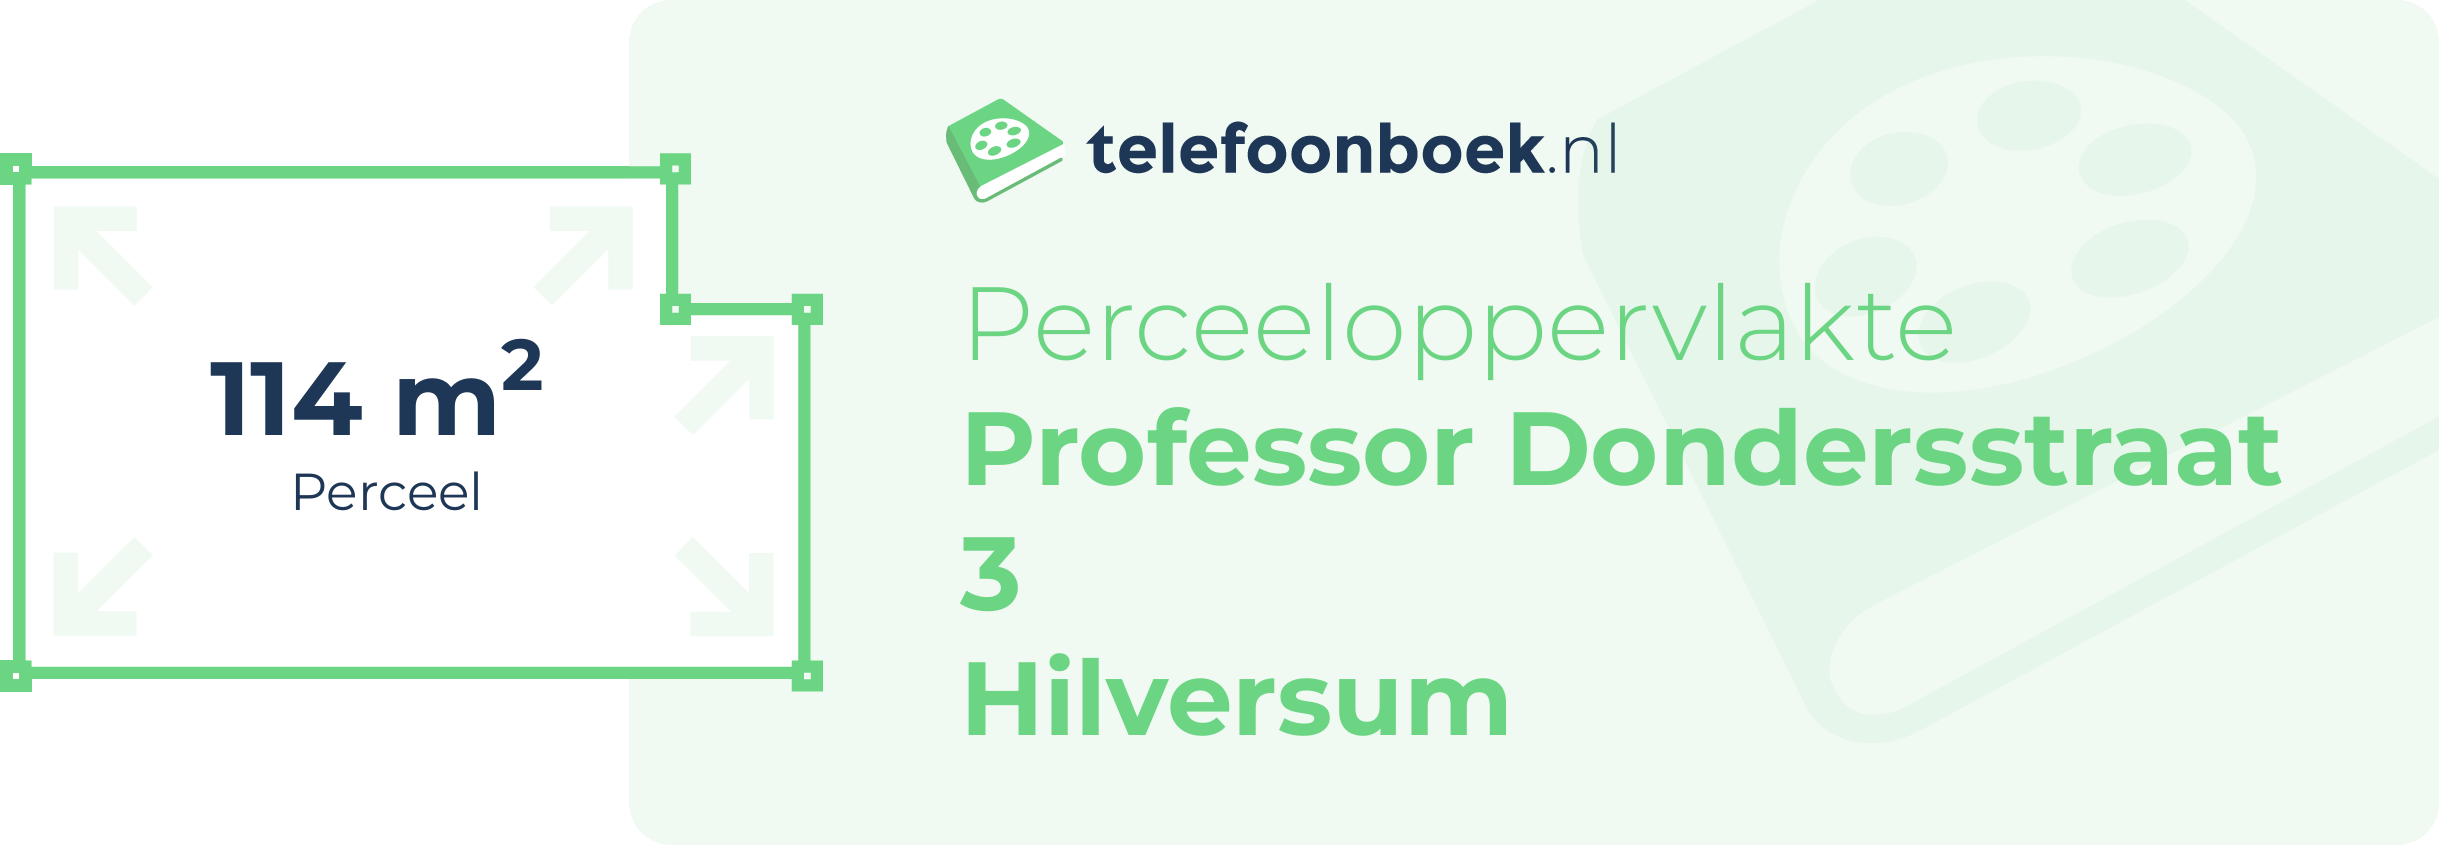 Perceeloppervlakte Professor Dondersstraat 3 Hilversum